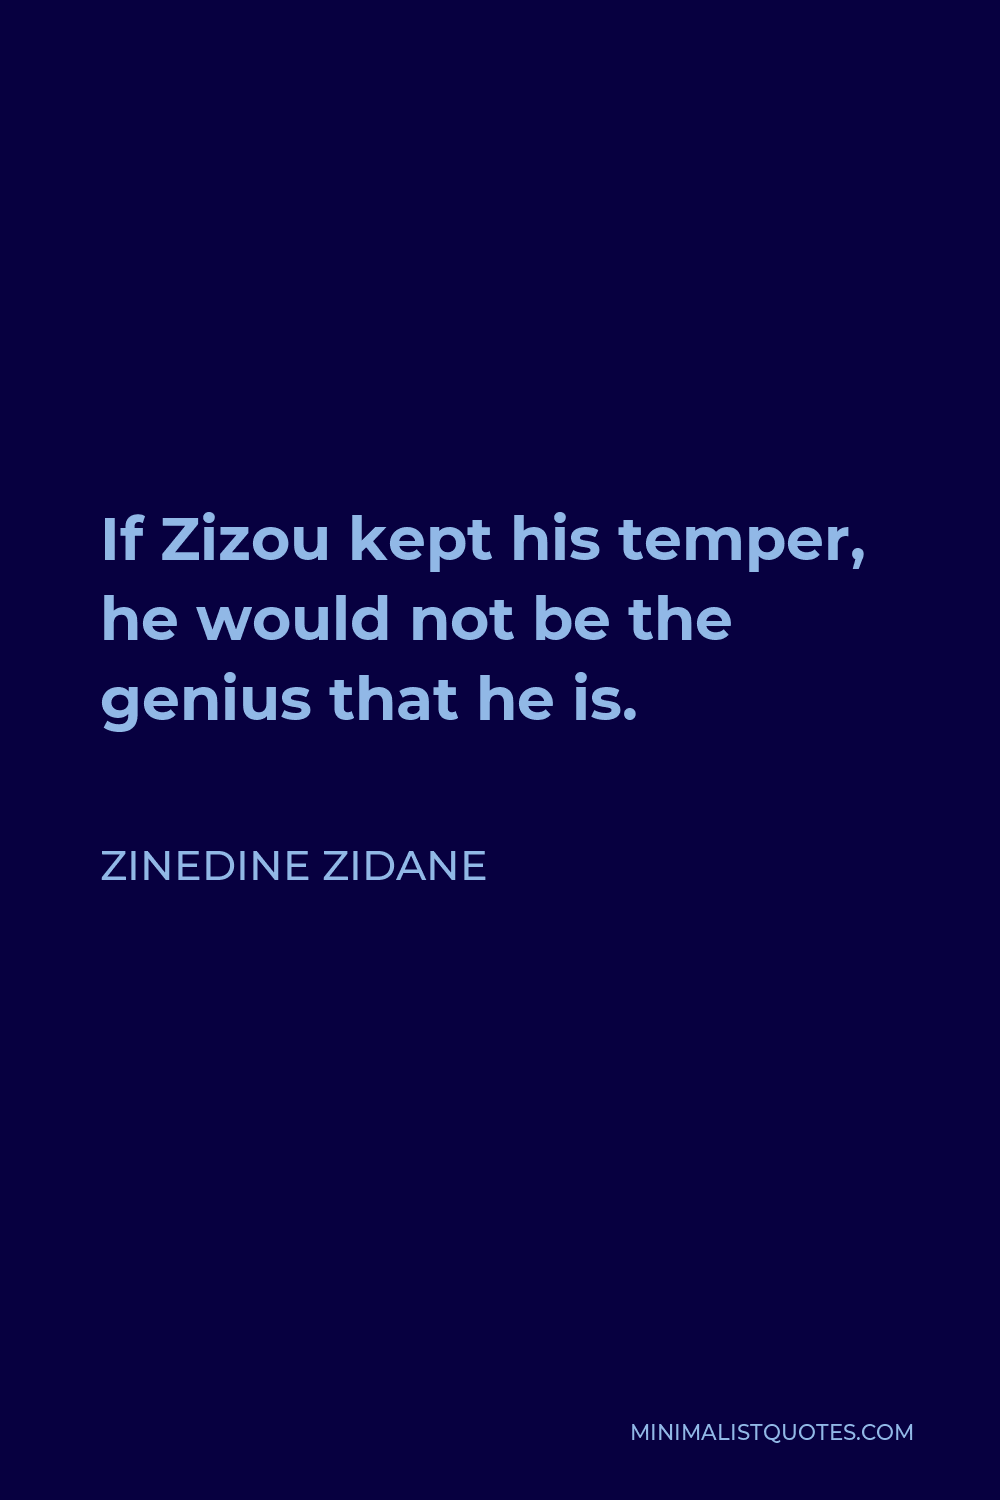 Zinedine Zidane Quote - If Zizou kept his temper, he would not be the genius that he is.